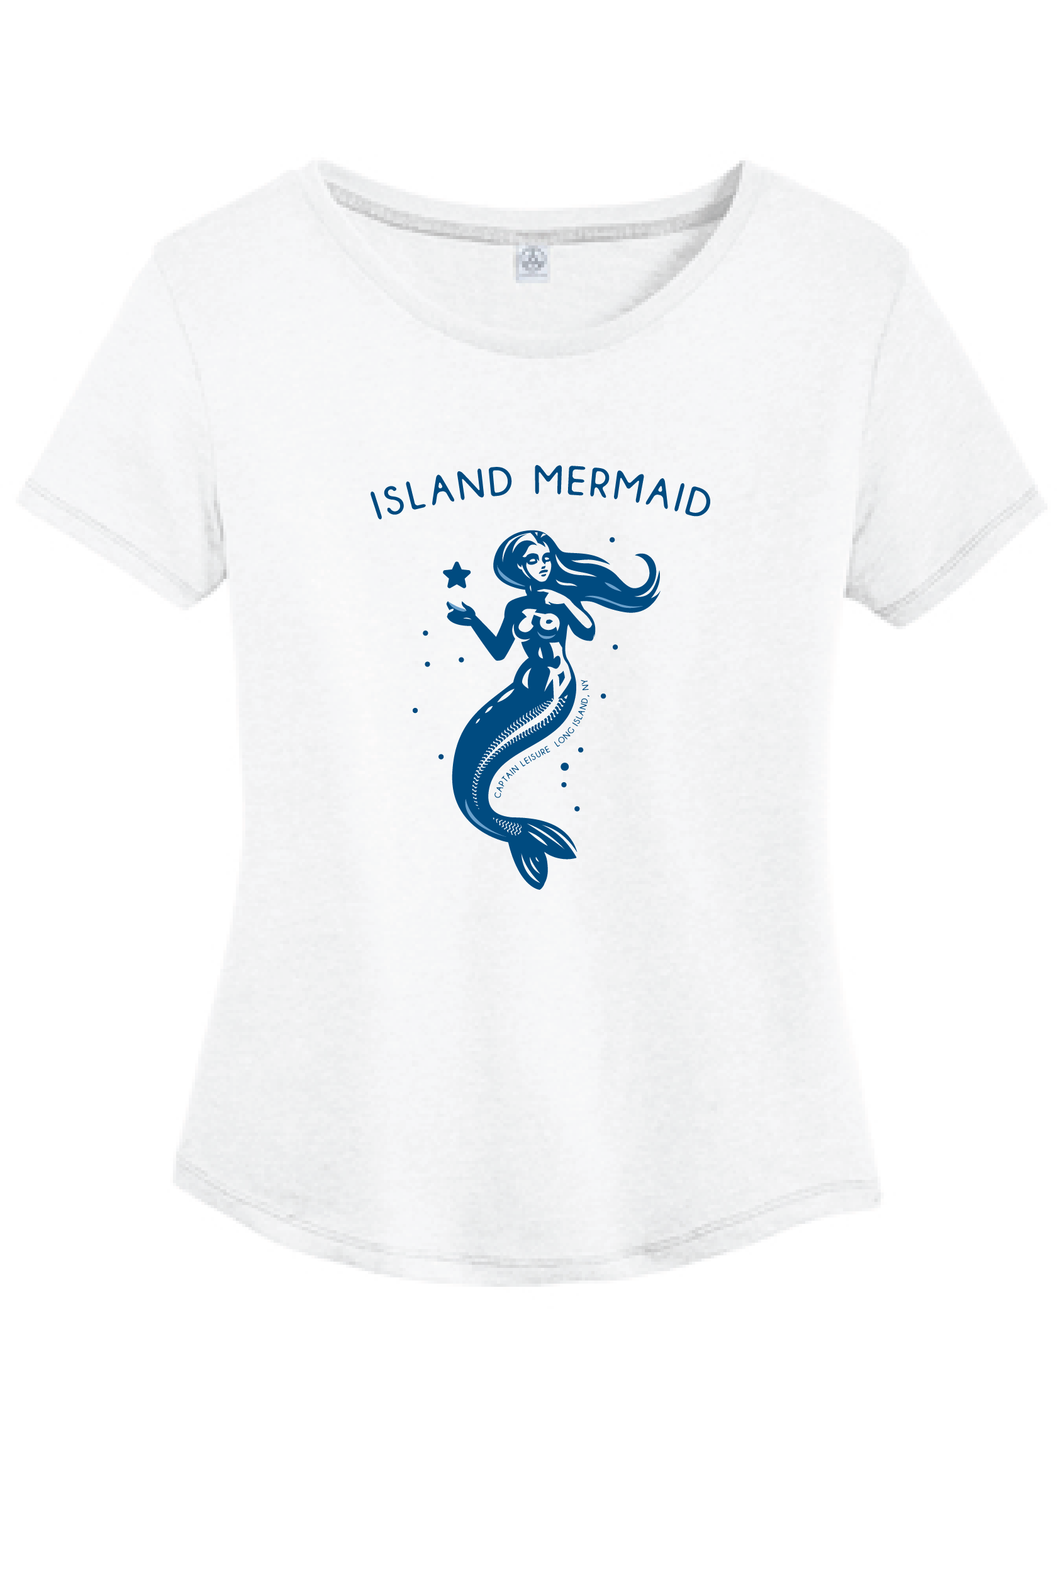 SALE: Island Mermaid Tee